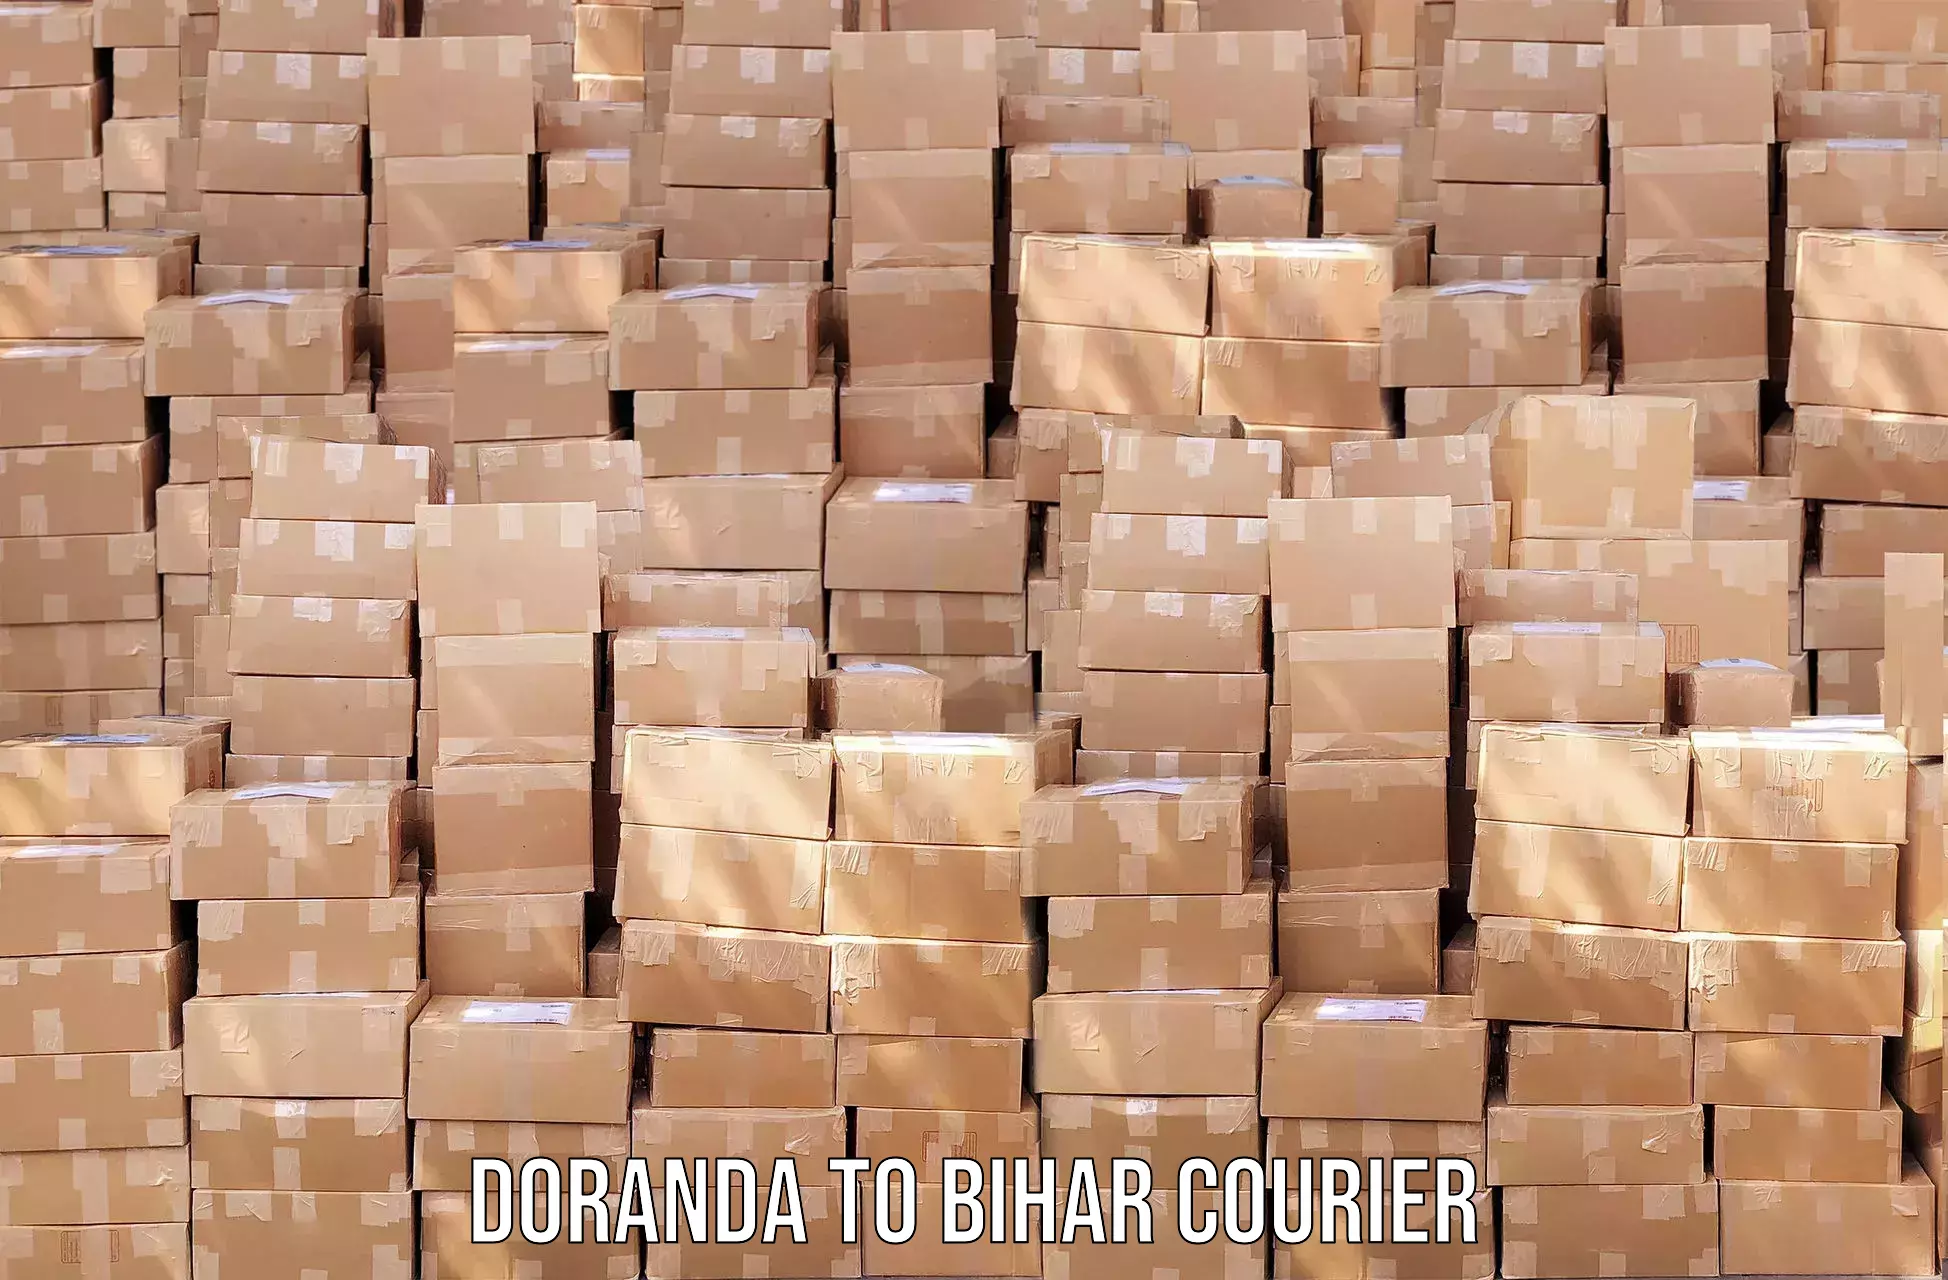 Courier services in Doranda to Mohiuddin Nagar